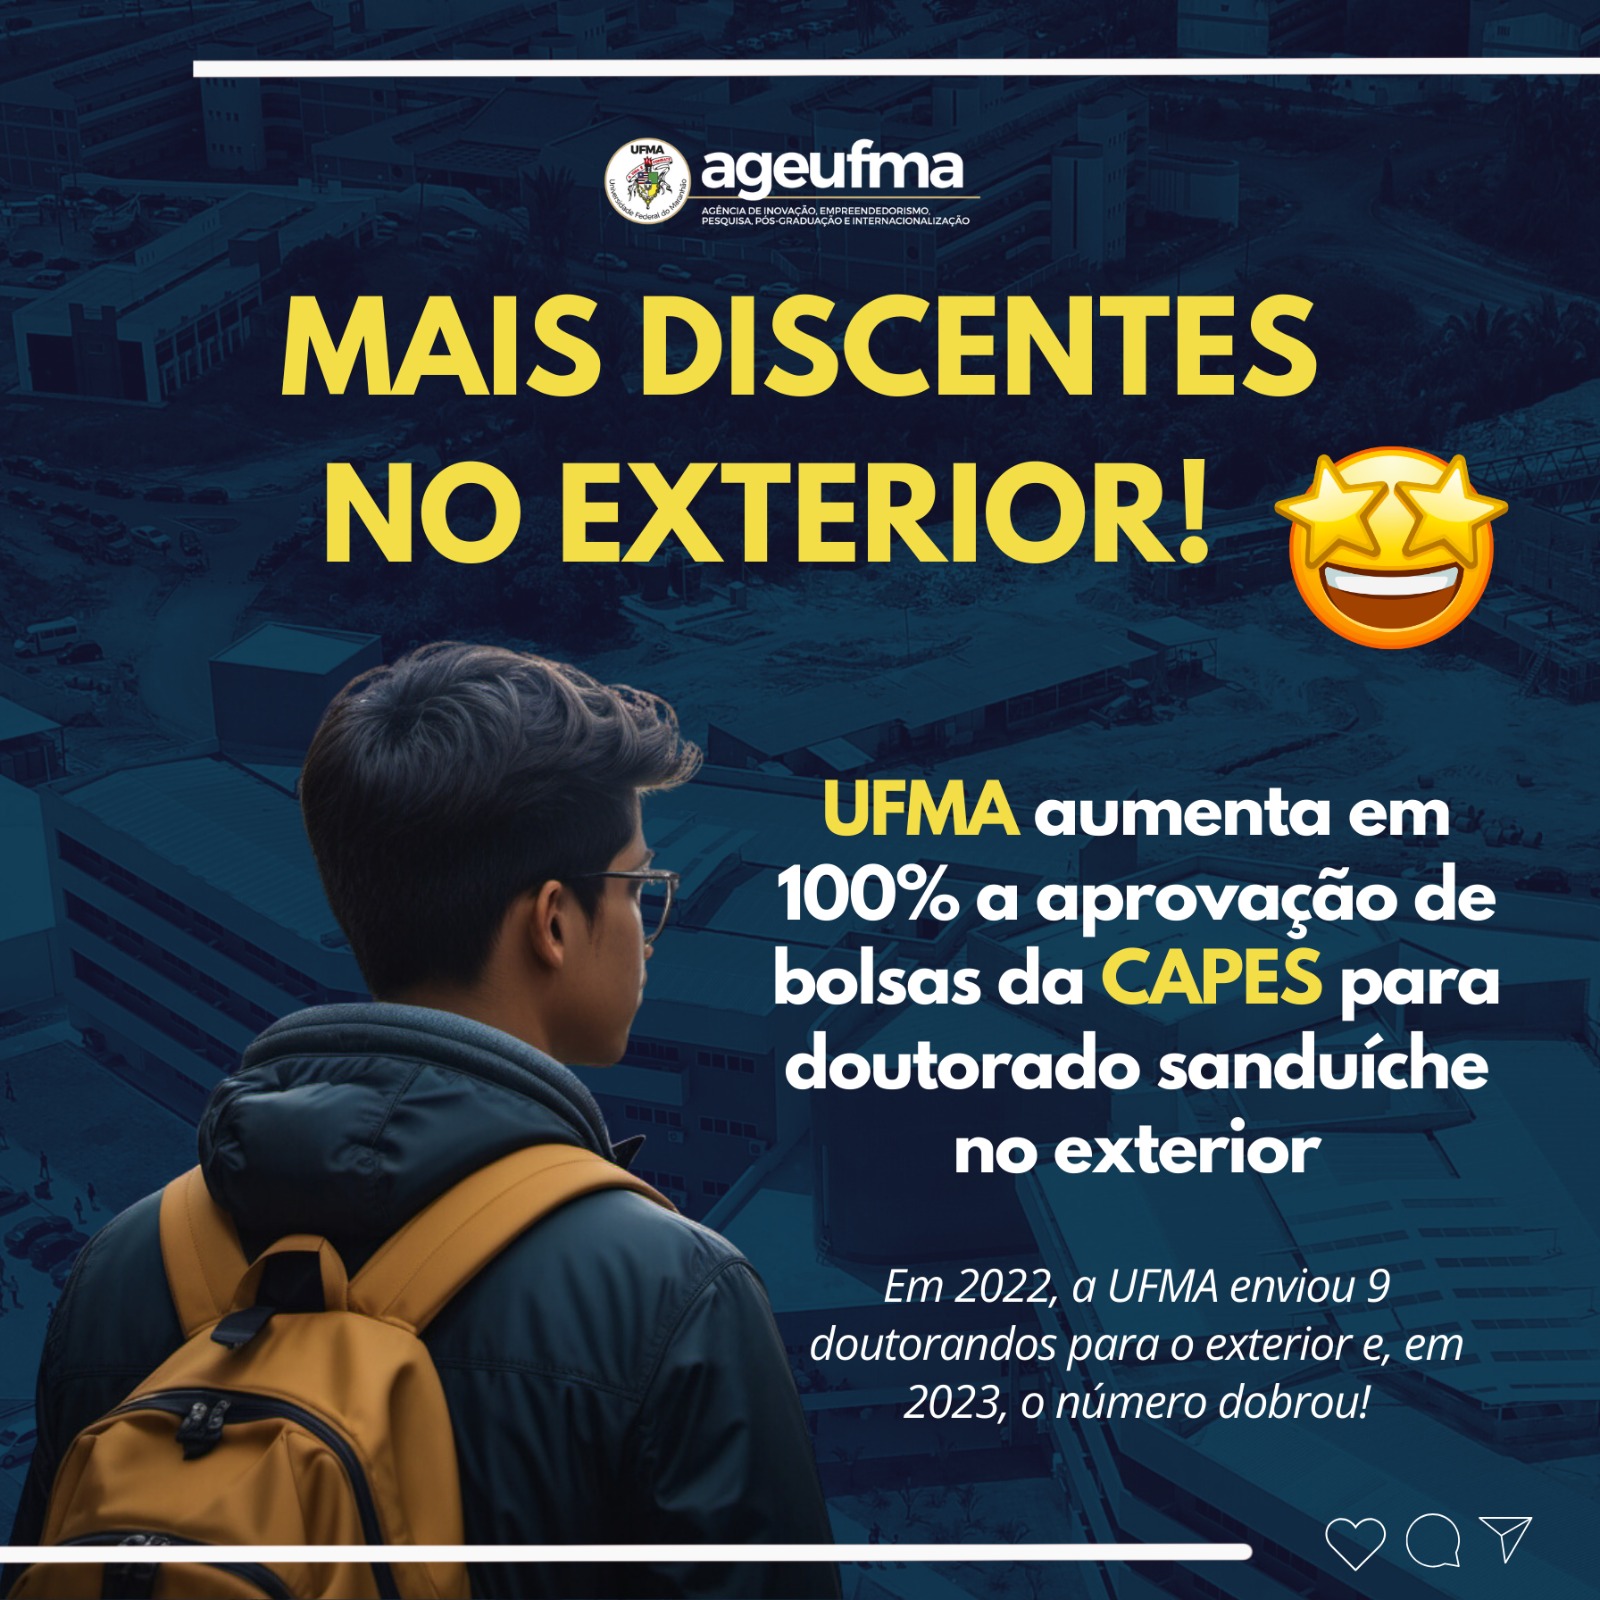 UFMA aumenta em 100% a aprovação de bolsas CAPES para doutorado sanduíche no exterior